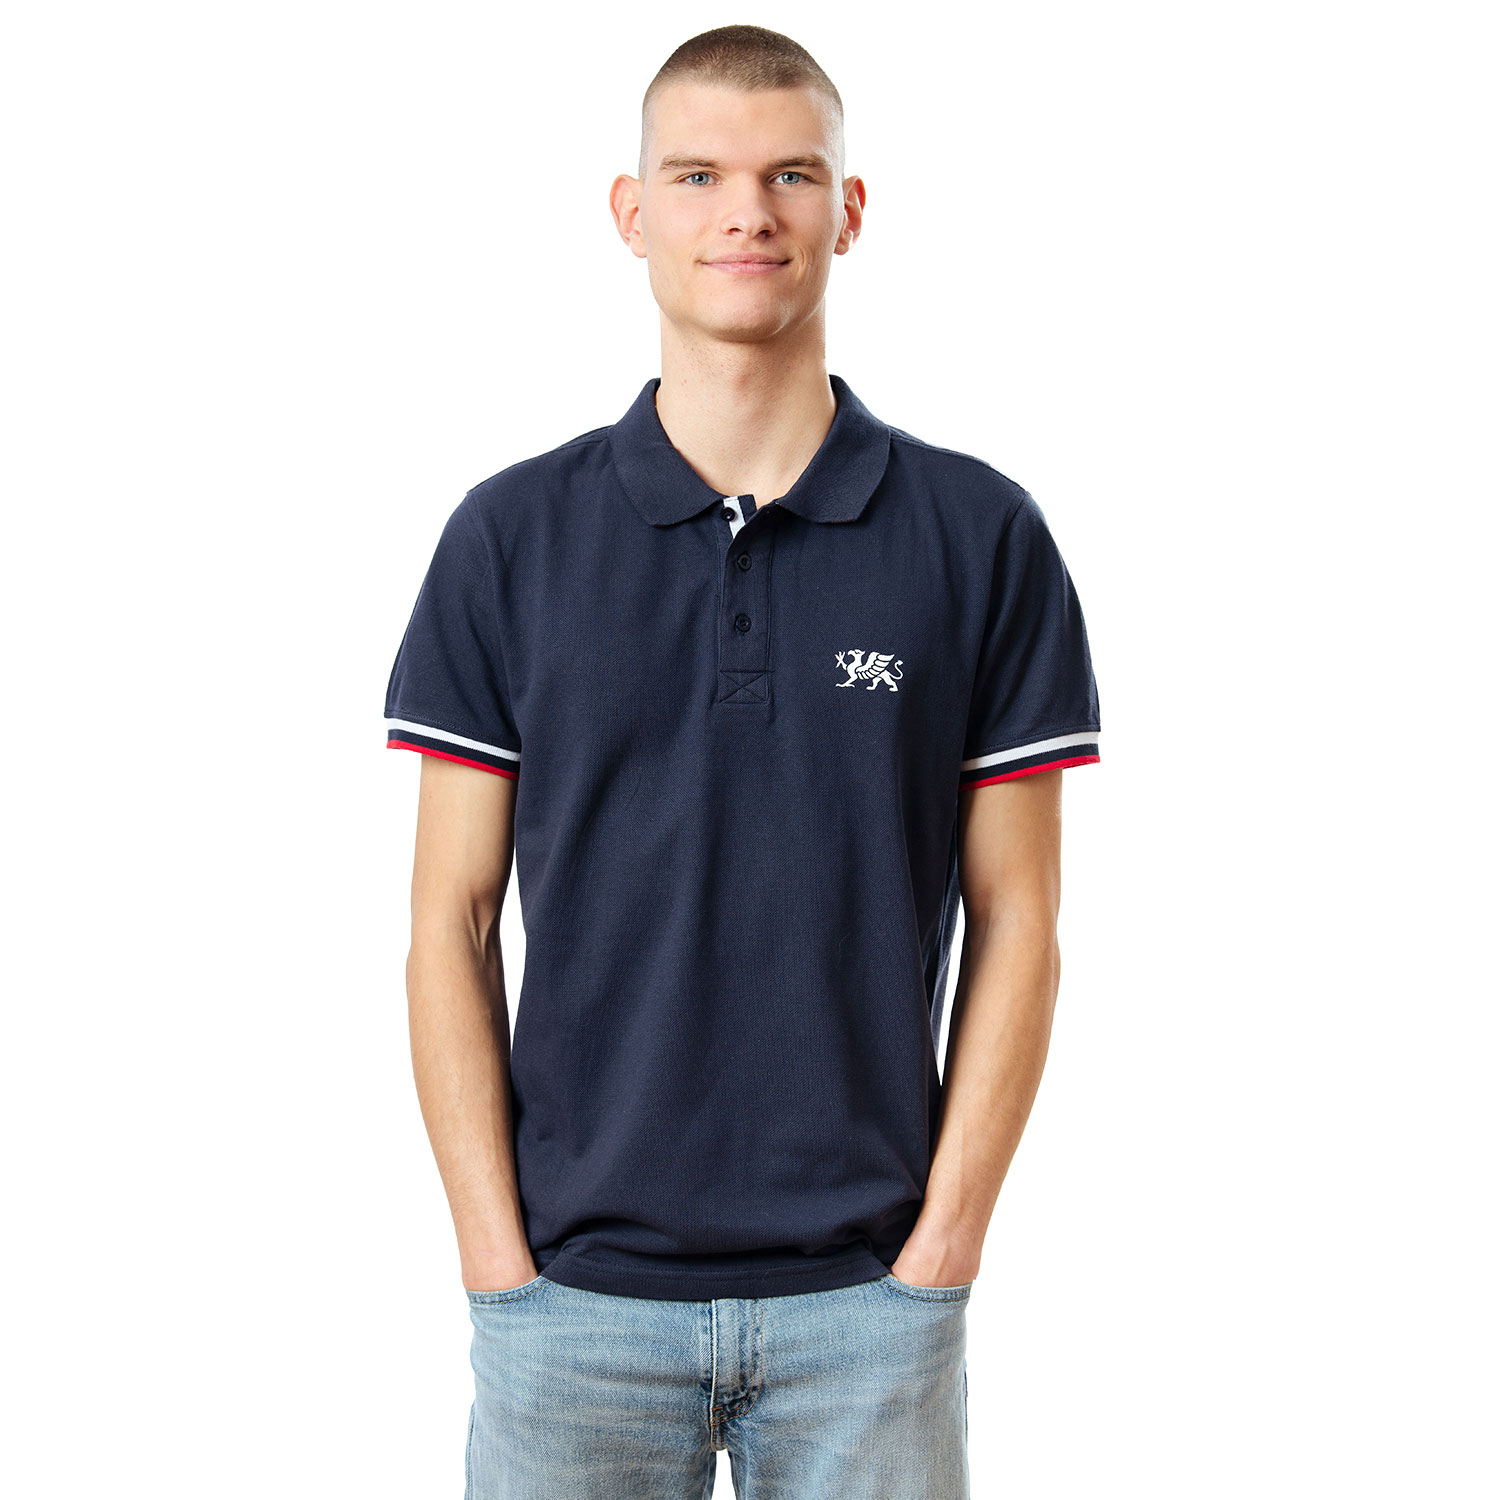 Rostocker Polo-Shirt, dunkelblau, Gr. M